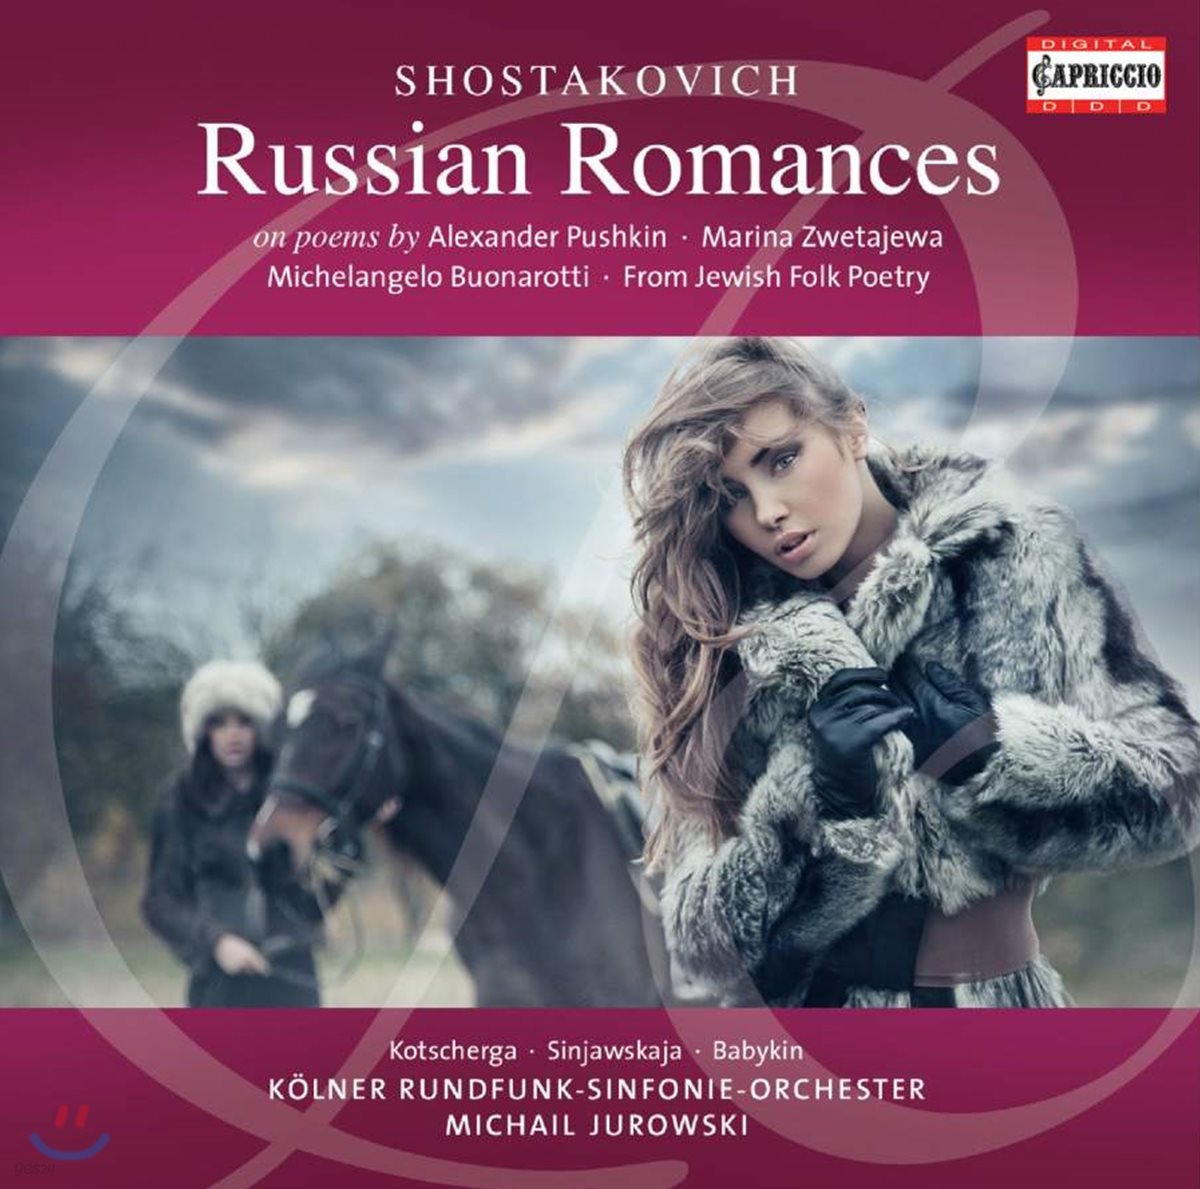 Michail Jurowski 쇼스타코비치: 러시안 로망스 - 오케스트라 반주로 듣는 솔로 성악곡 모음집